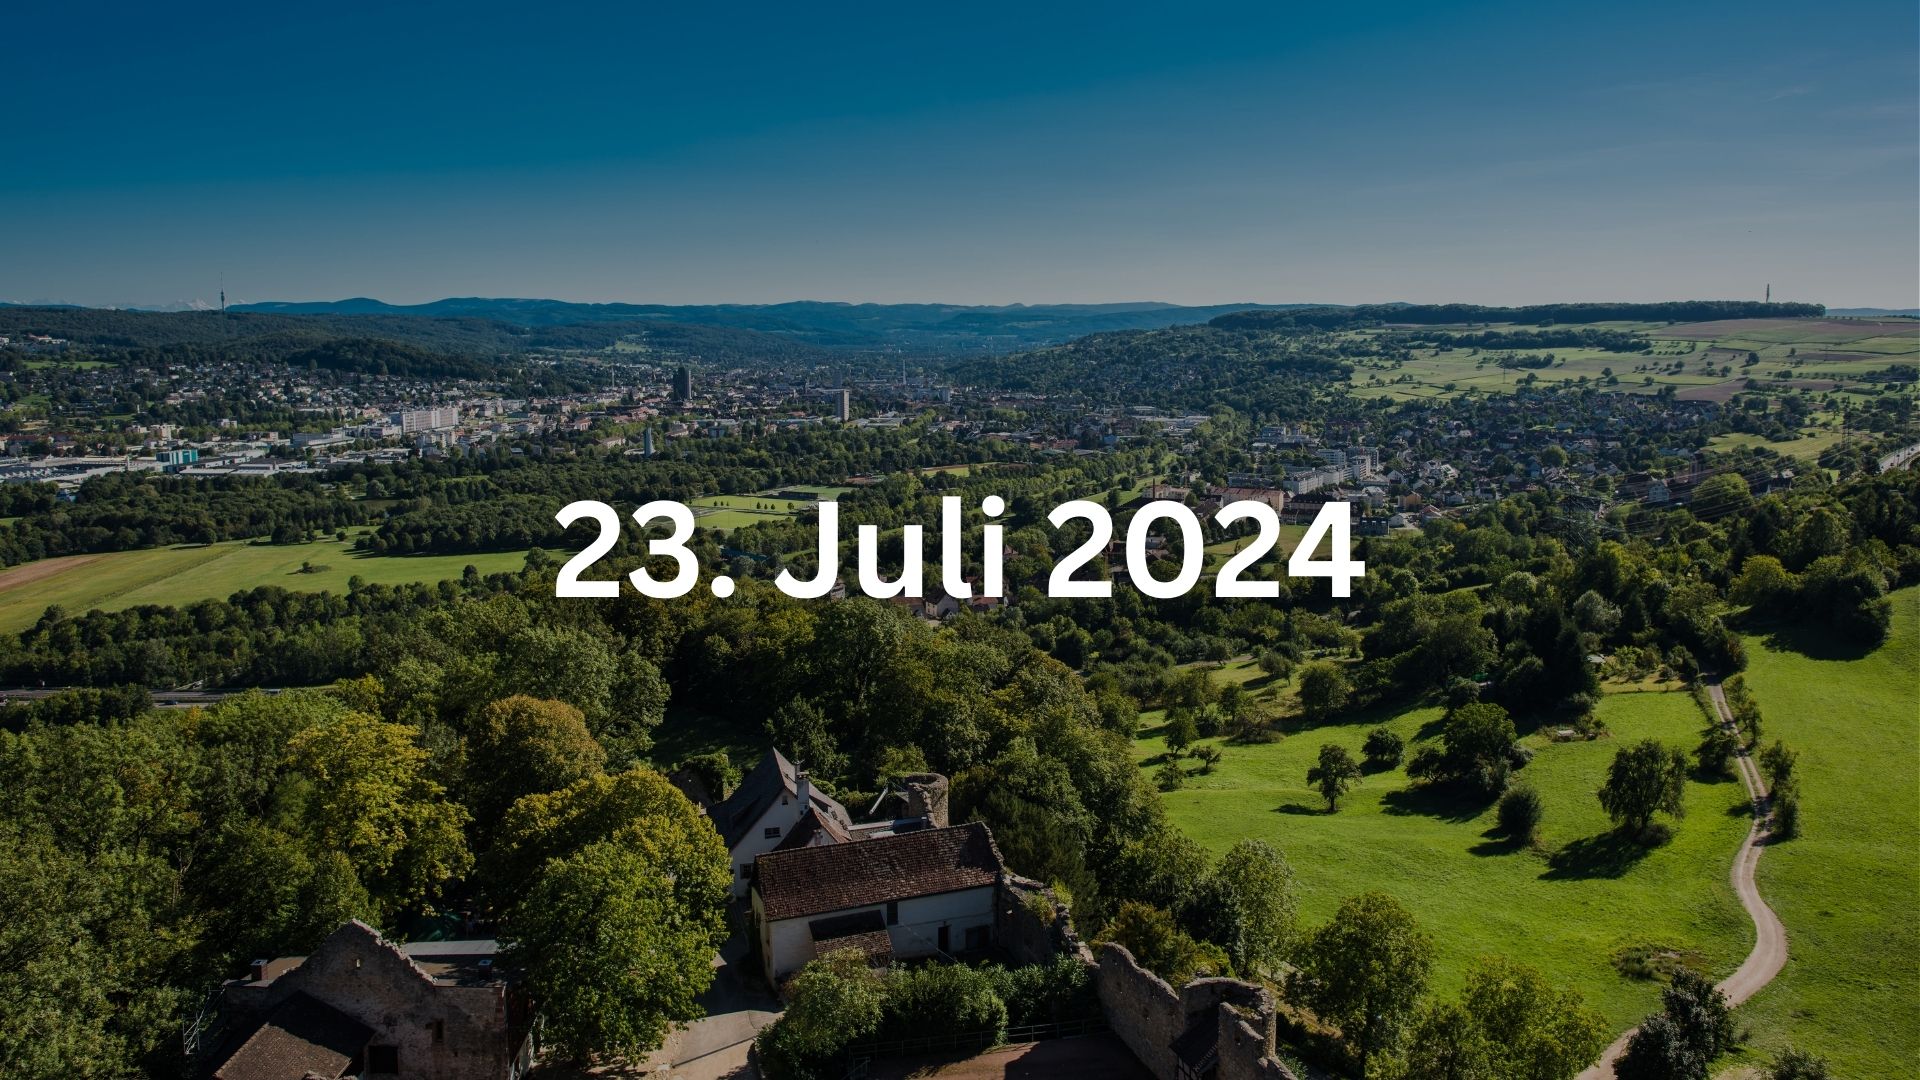 Bild von Lörrach mit dem Datum 23. Juli 2024